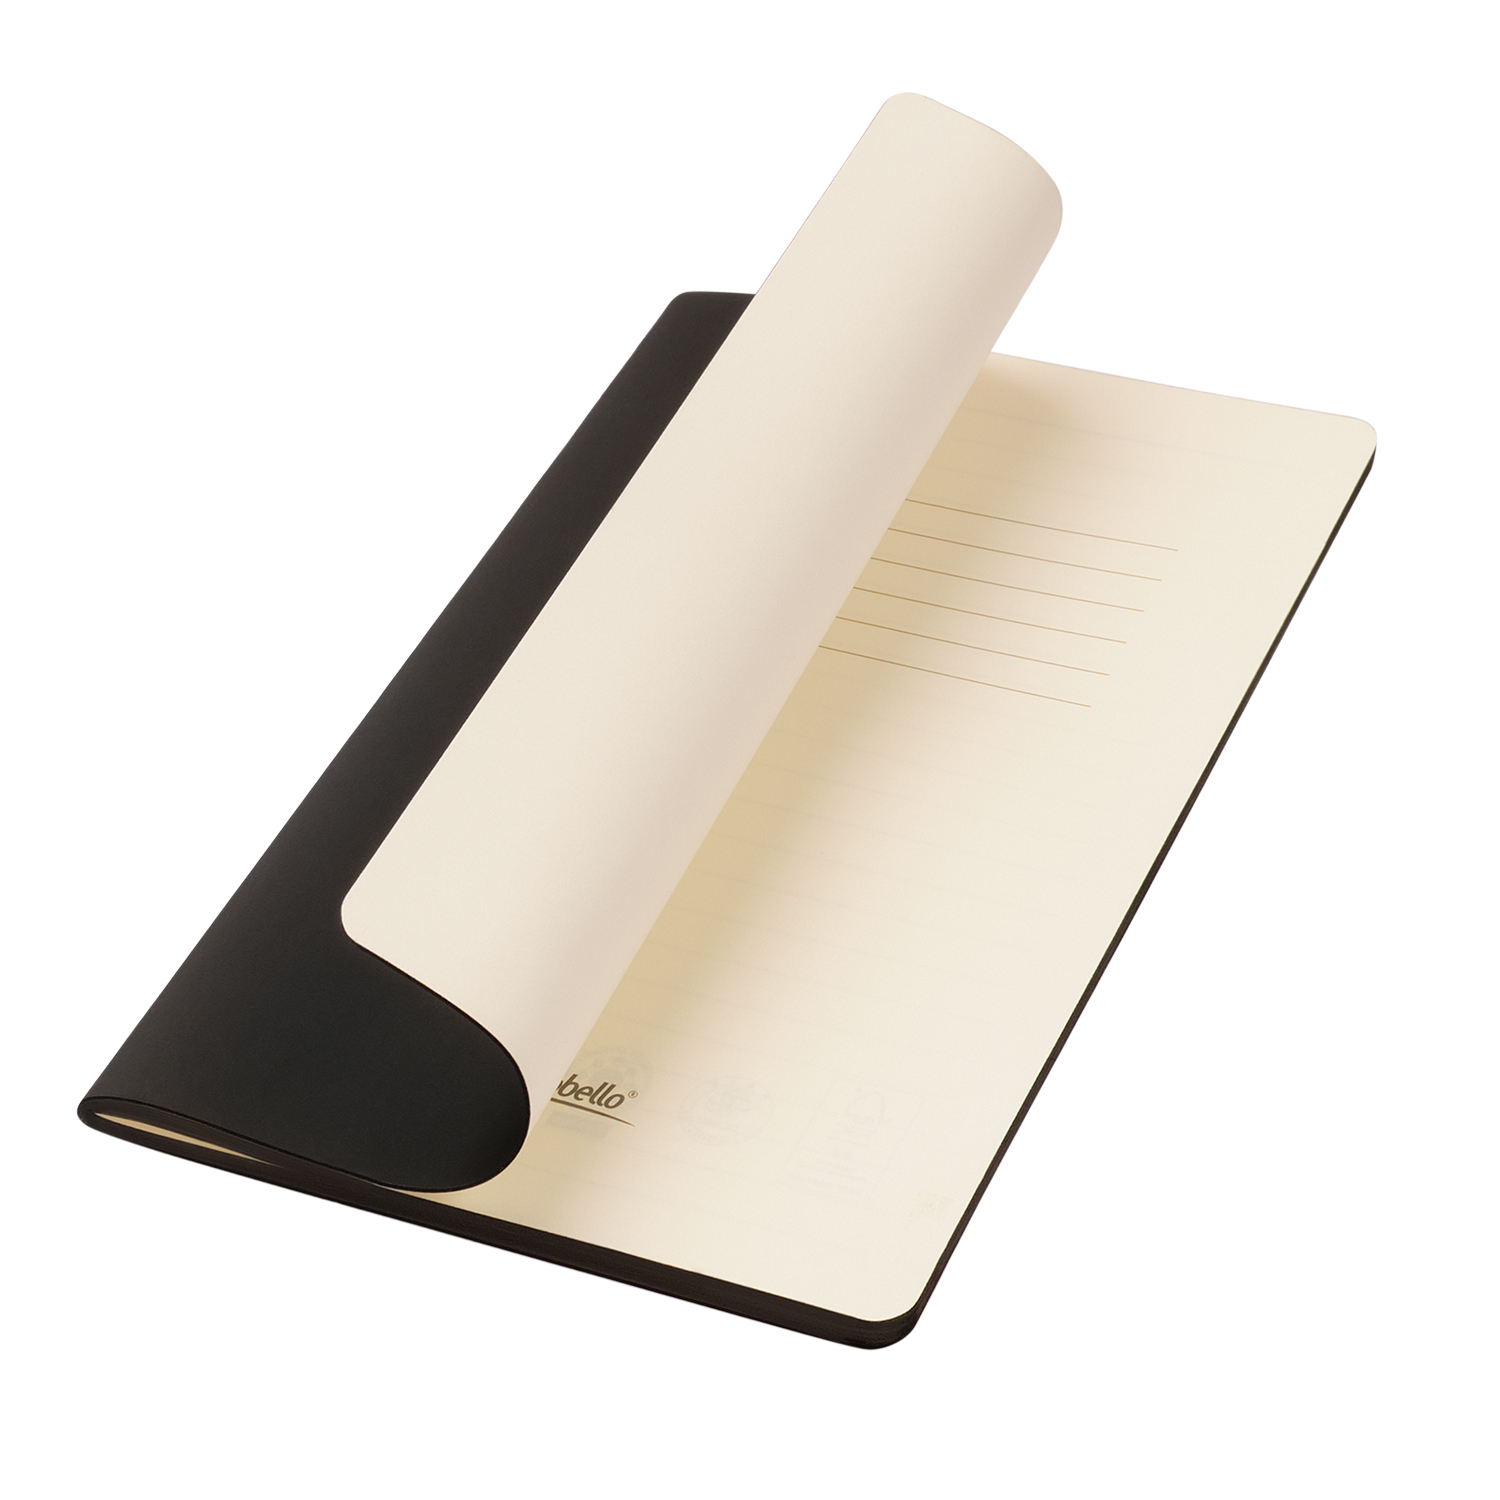 Блокнот Portobello Notebook Trend, Alpha slim, черный